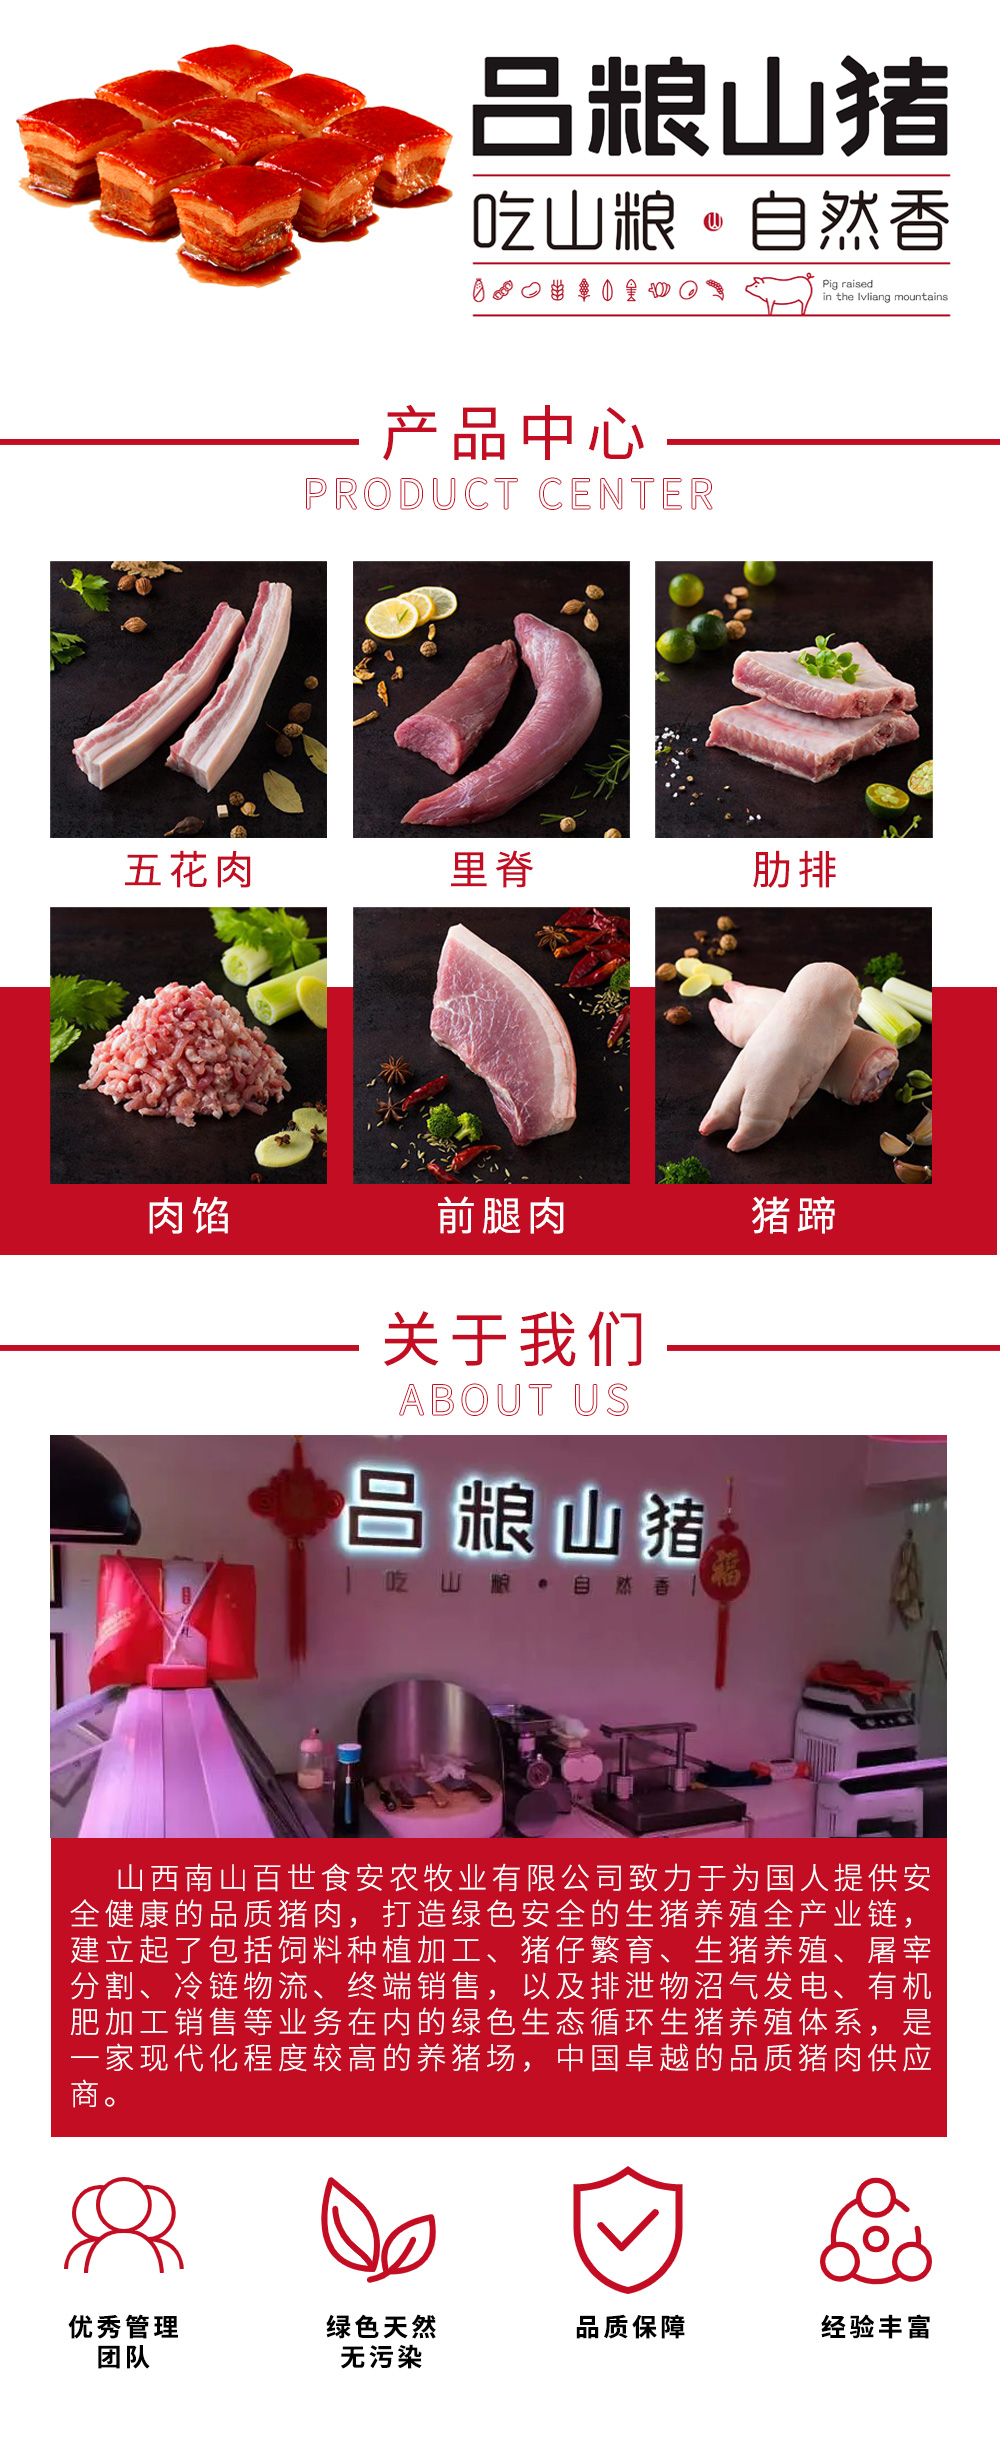 网上加盟店排行榜_成都大龙燚餐饮管理有限公司